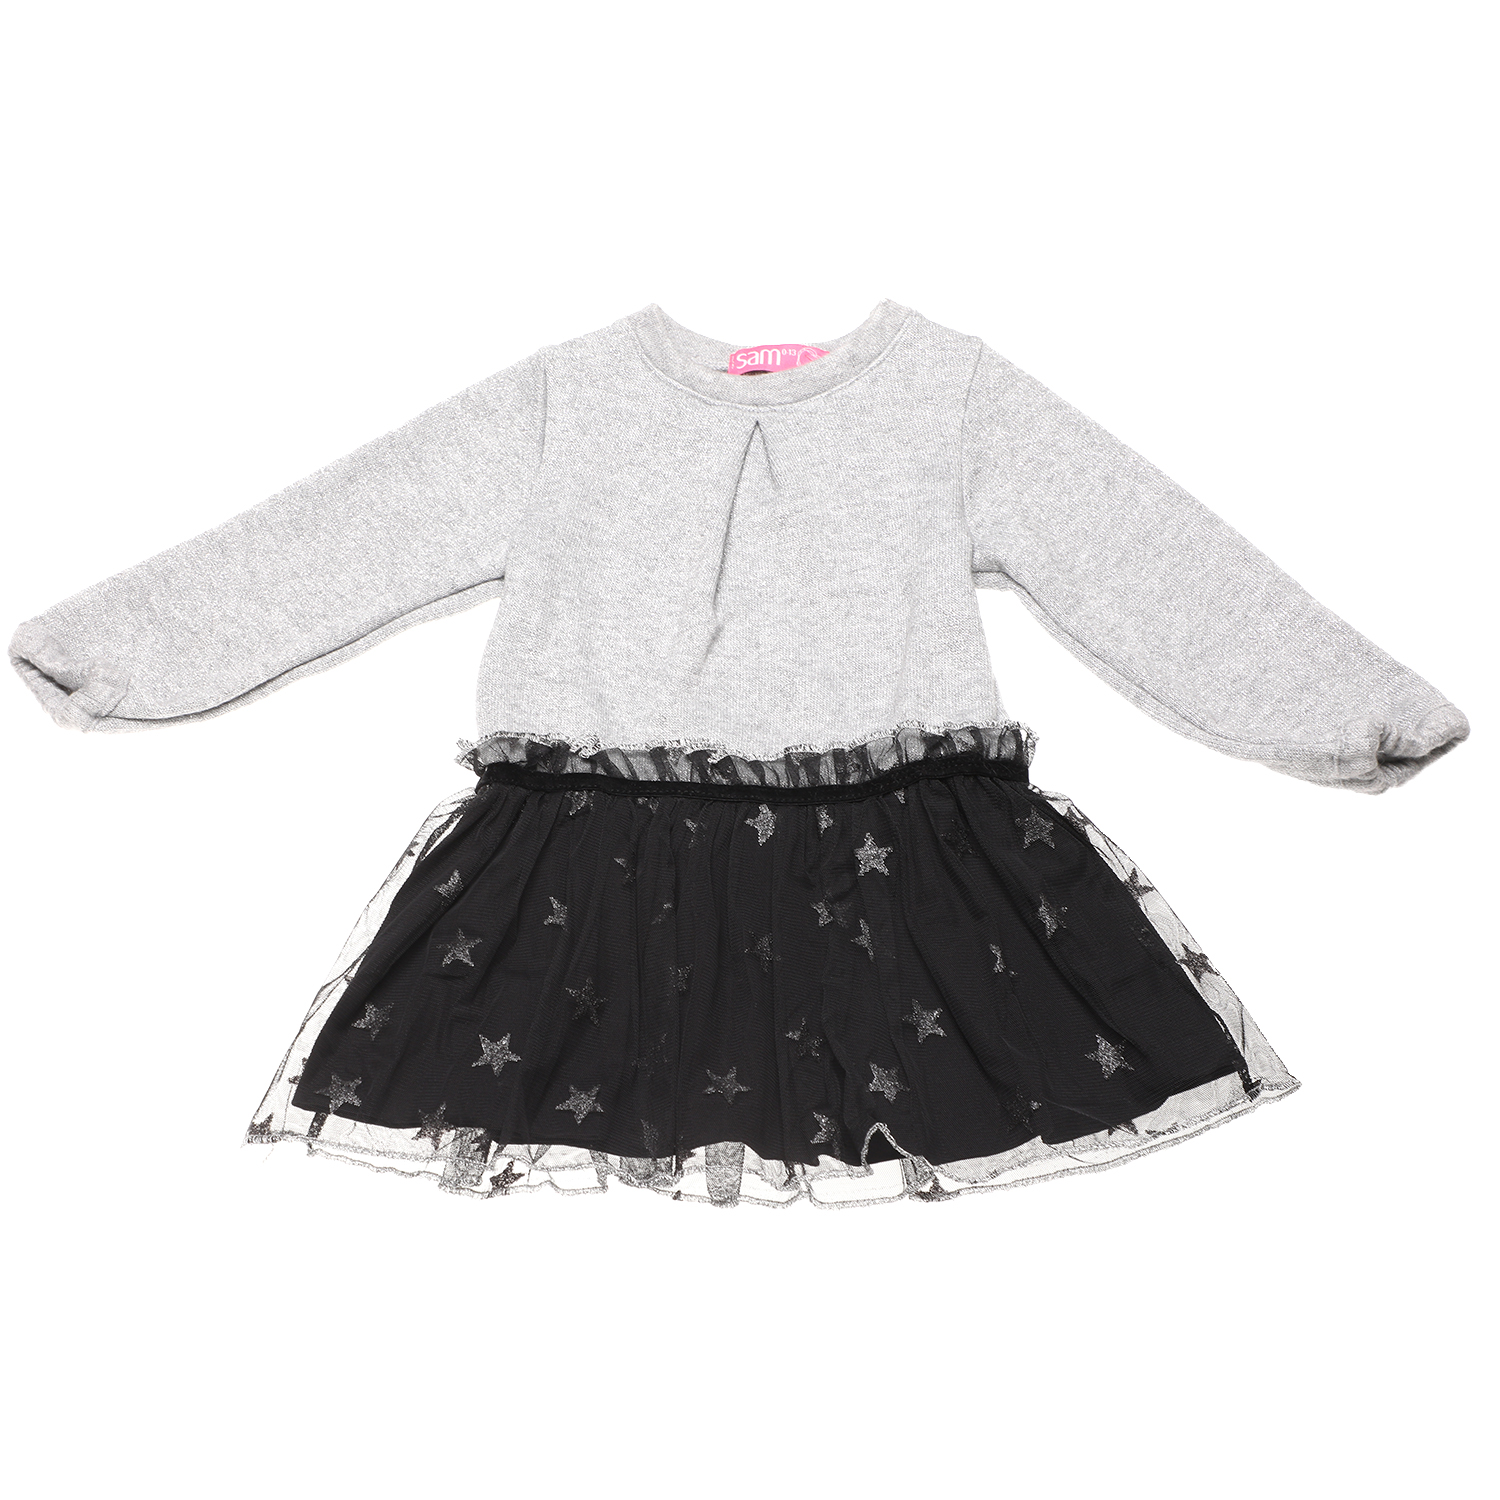 Παιδικά/Girls/Ρούχα/Φορέματα Μακρυμάνικα SAM 0-13 - Παιδικό πλεκτό φόρεμα SAM 0-13 γκρι μαύρο